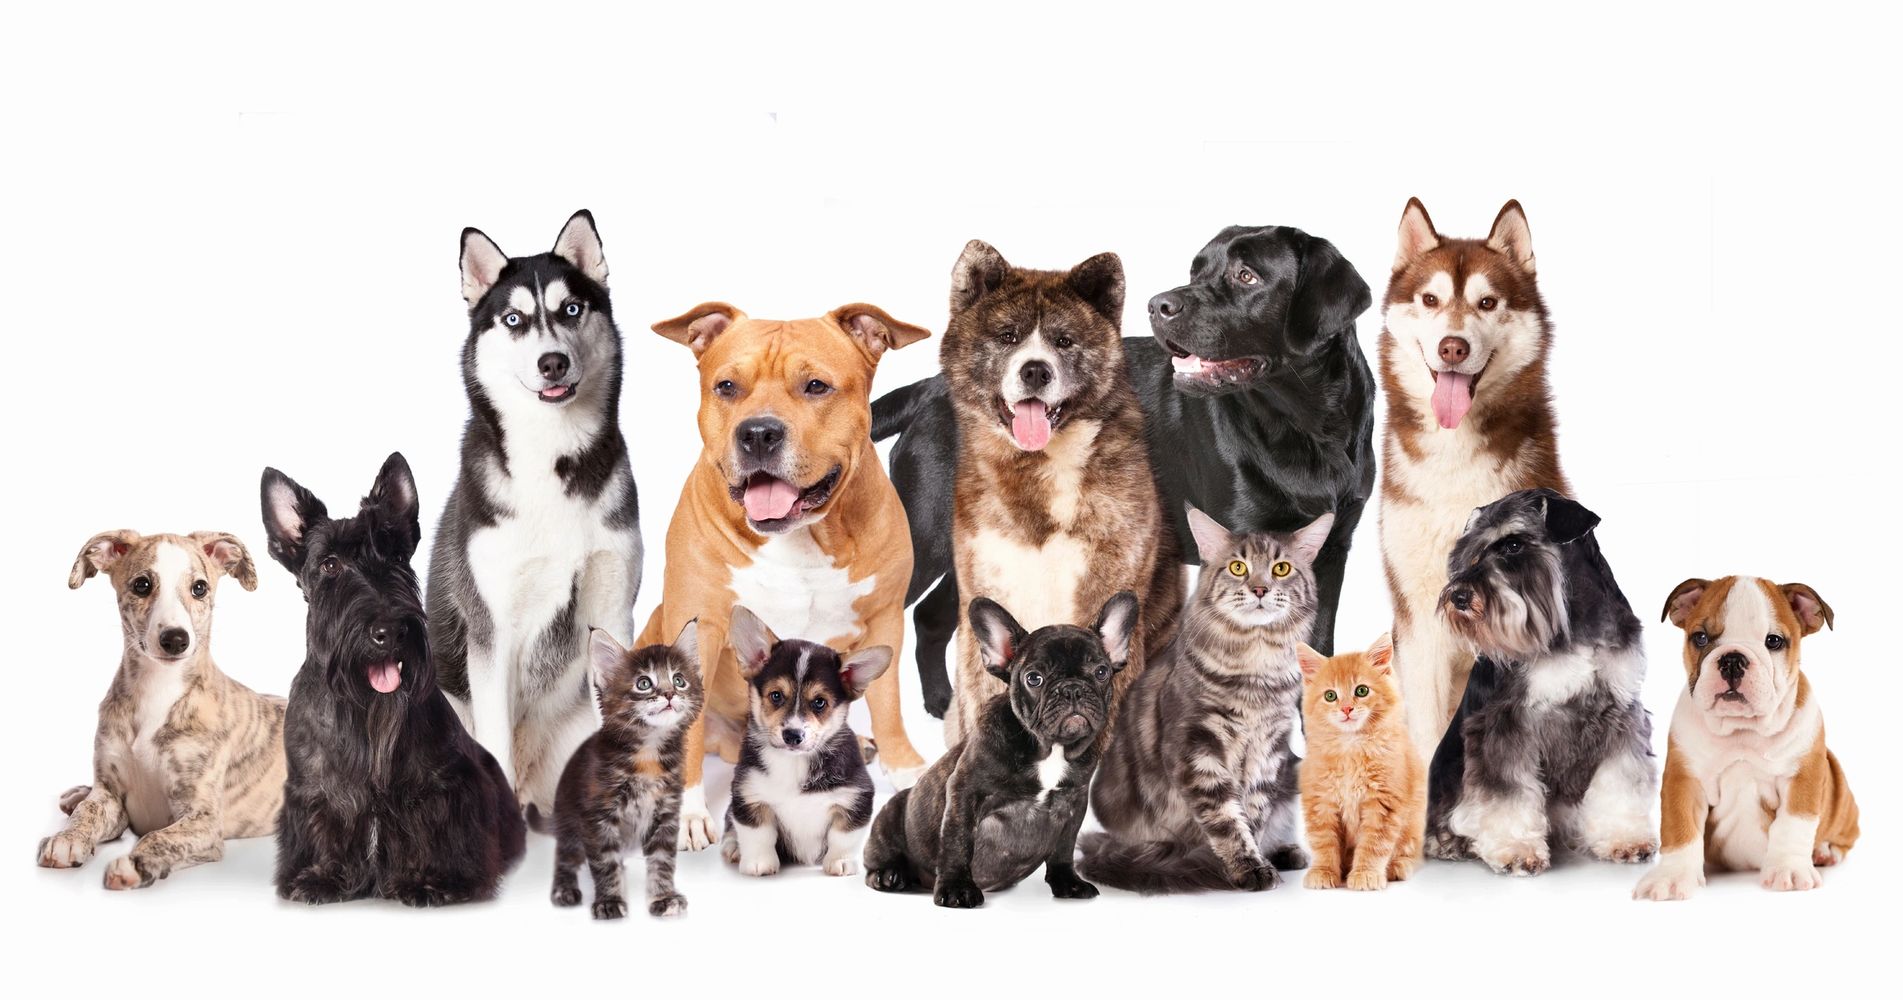 Gourmet, Dog Food, Gourmet Food, Dog Treats, Pet Store, Pets, Dog, Cat, Whitinville, pet food, vet